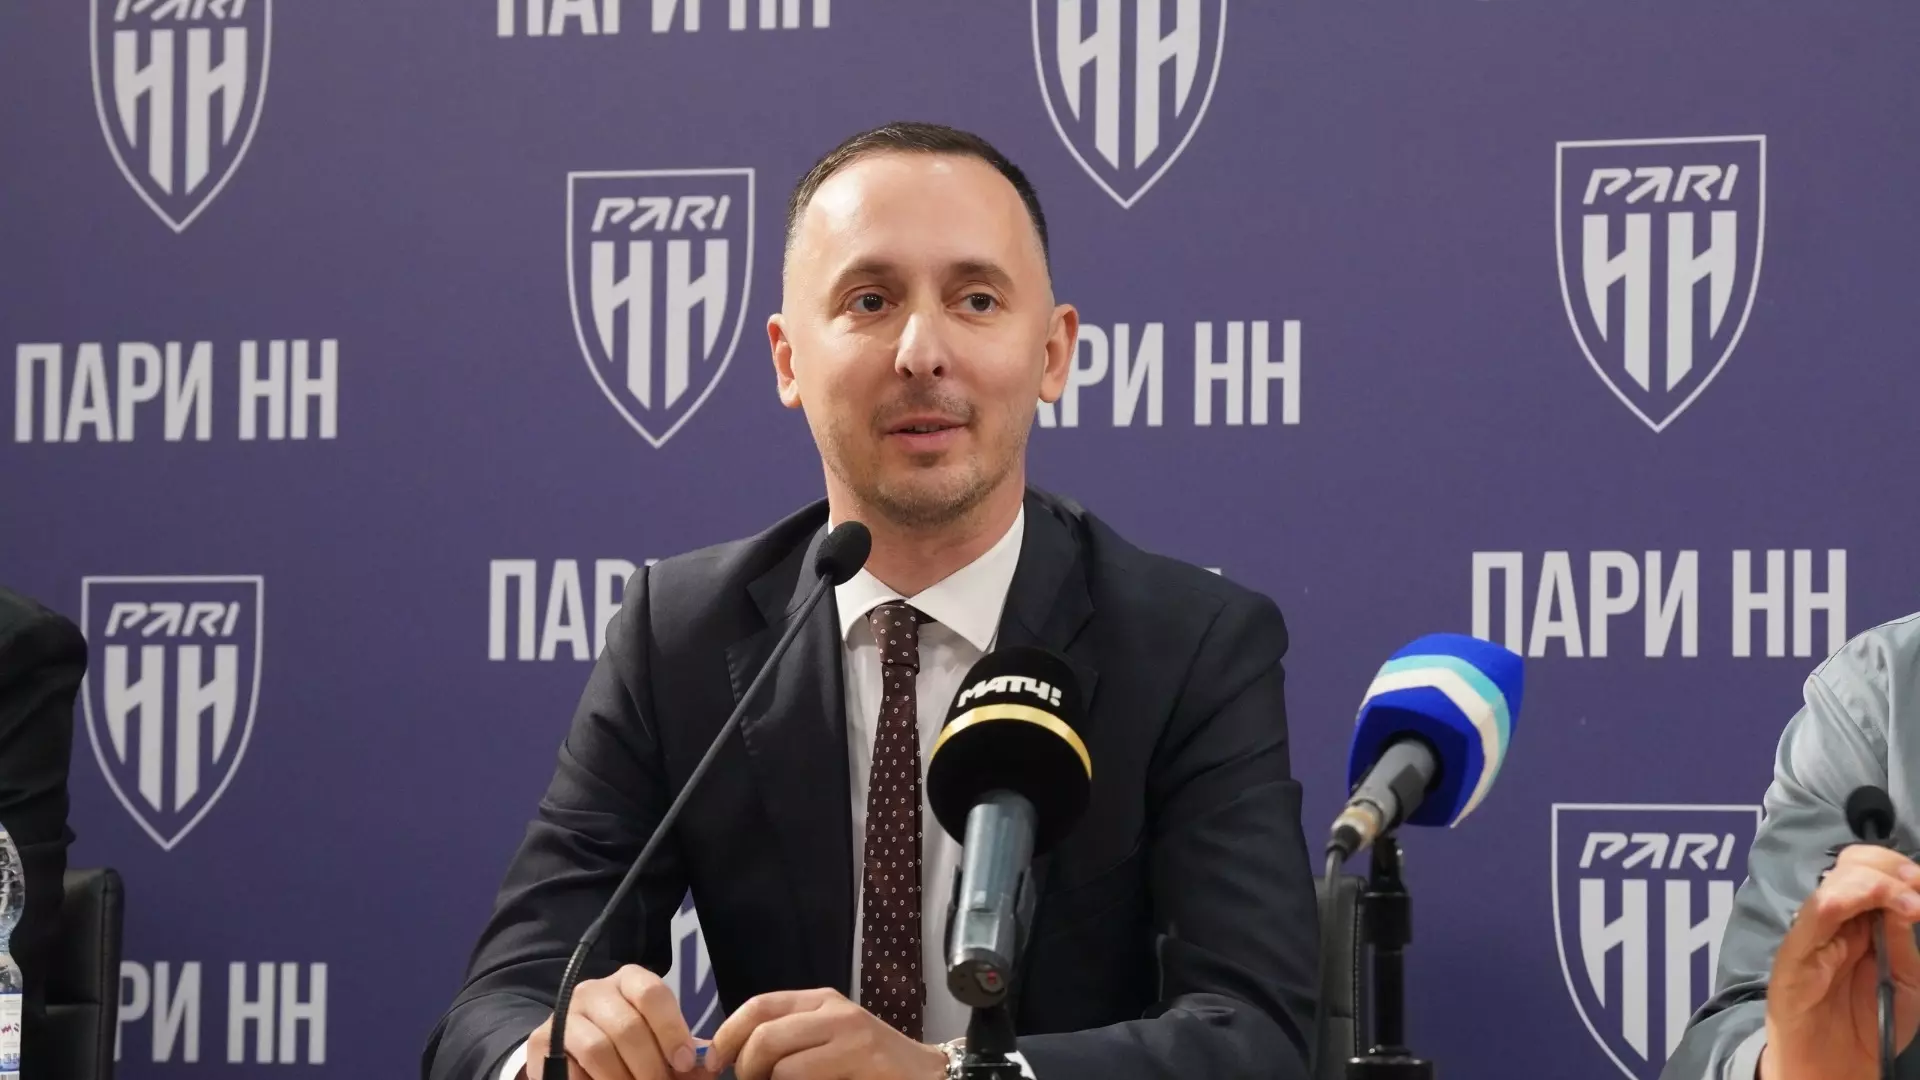 Мелик-Гусейнов пригласил Валиеву на матч «Пари НН»